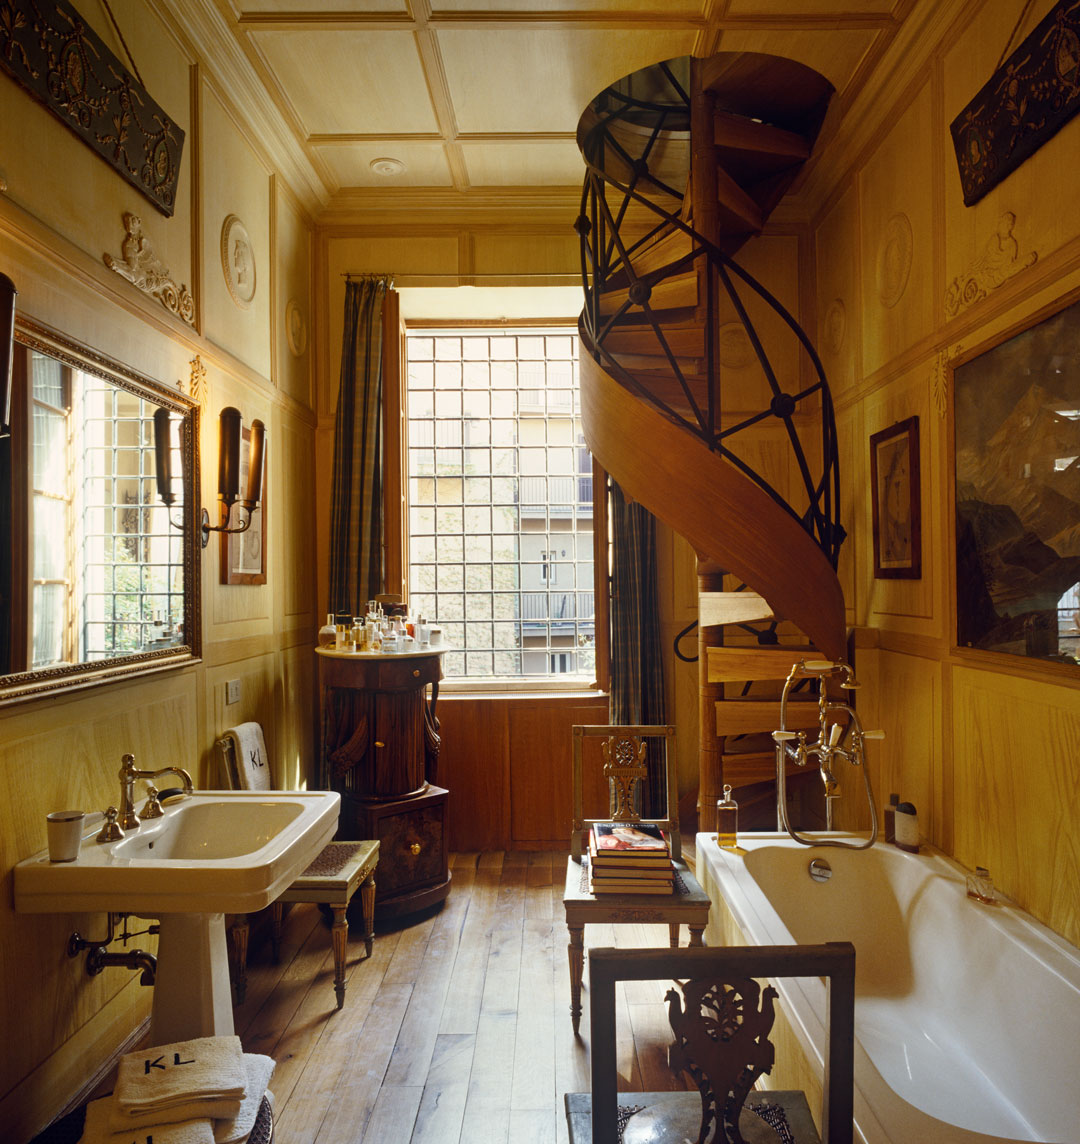 Karl Lagerfeld's bathroom photo by Fritz von der Schulenburg courtesy Interior Archive